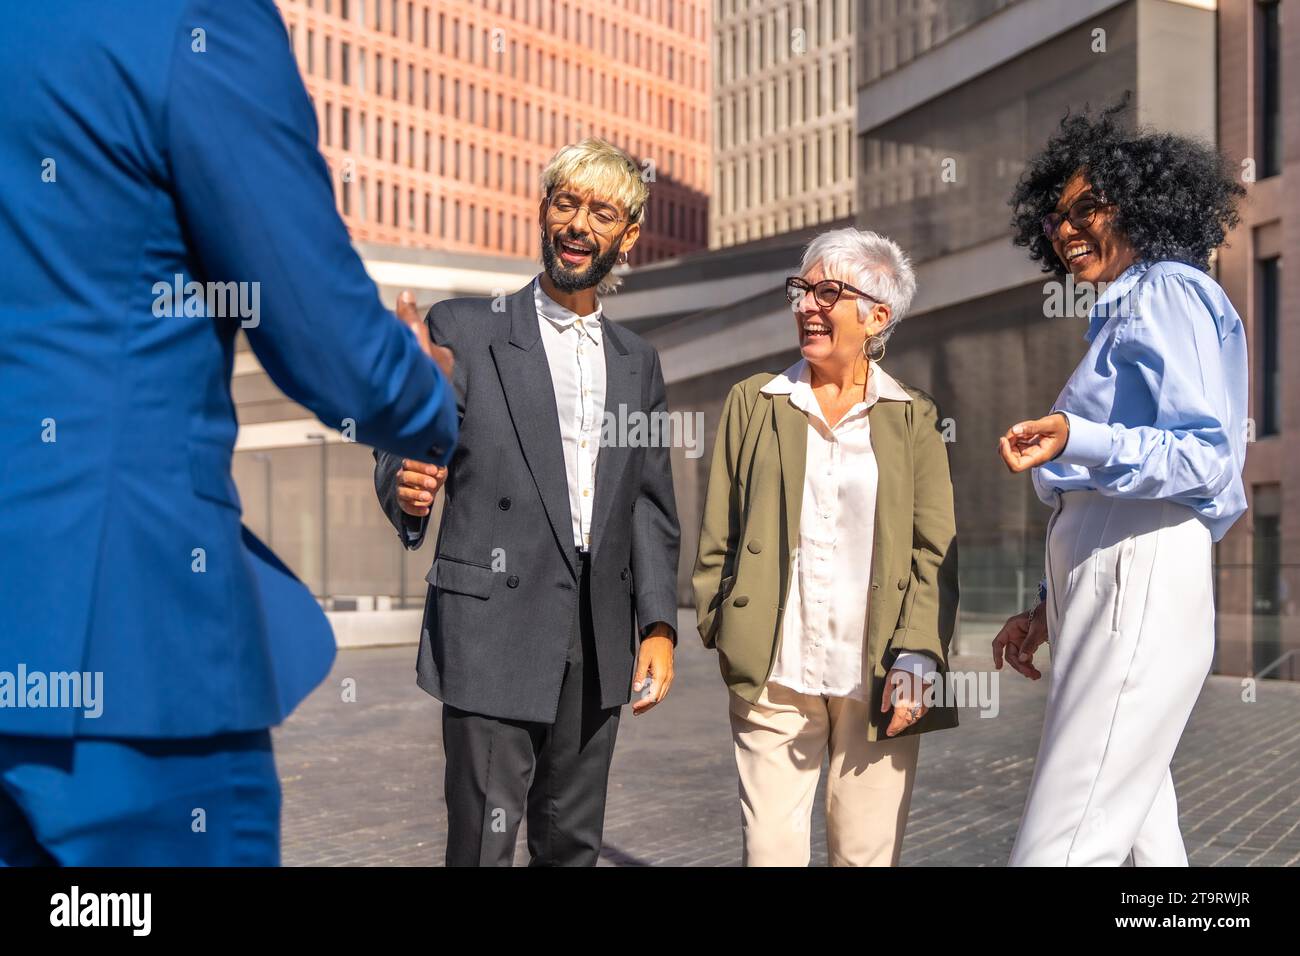 Groupe multiethnique de gens d'affaires se serrant la main lorsqu'ils arrivent à un point de rencontre à l'extérieur d'un bâtiment financier Banque D'Images